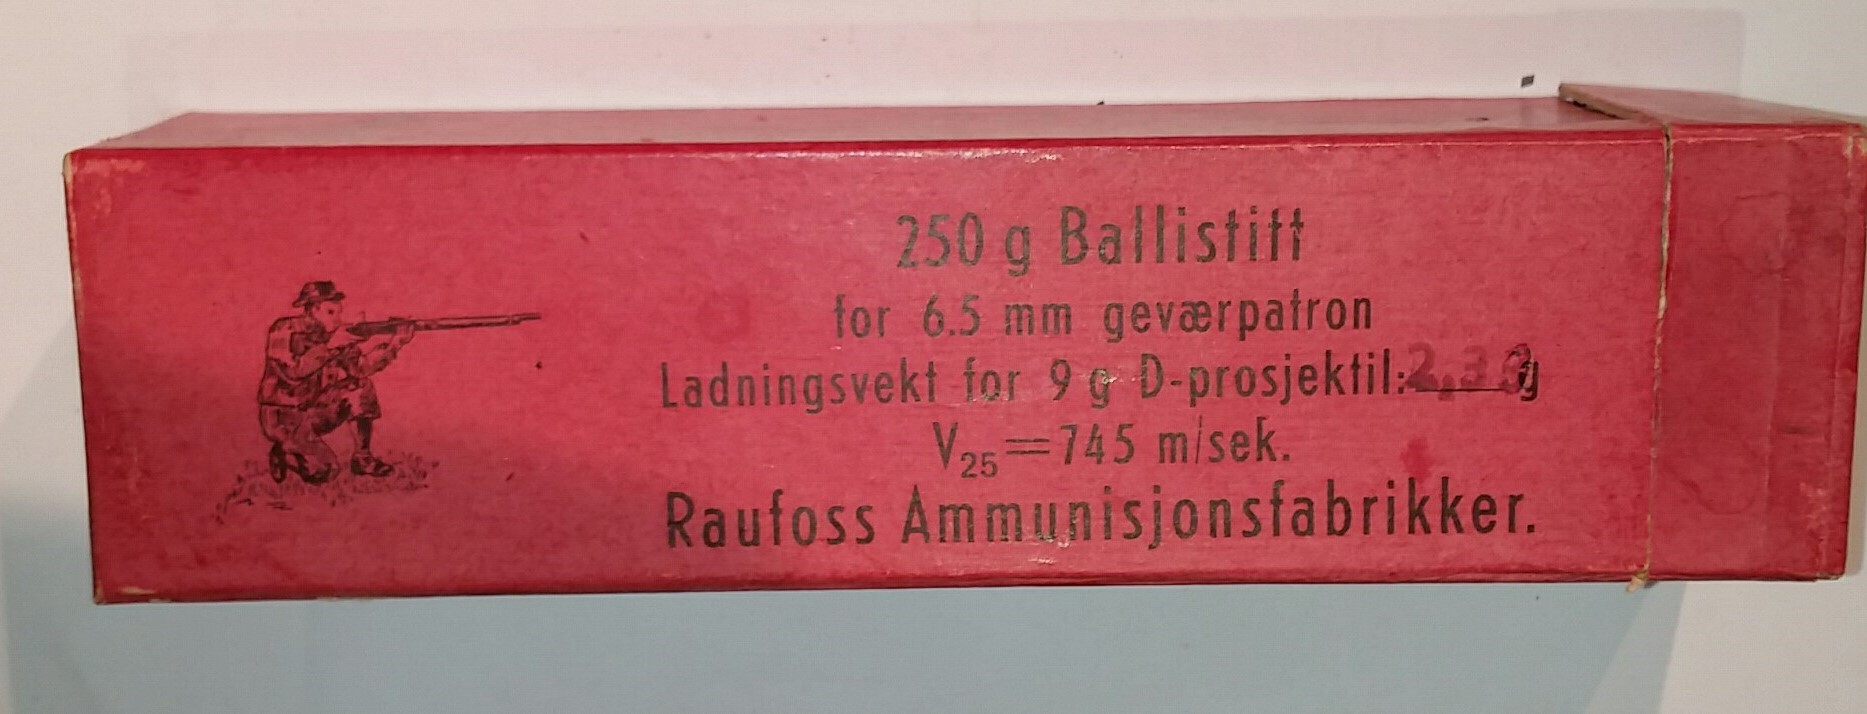 ./ammo/ladekomponenter/bilder/Ladekomponent-Krutt-Raufoss-Gevaerballistitt-250gram-3.jpg